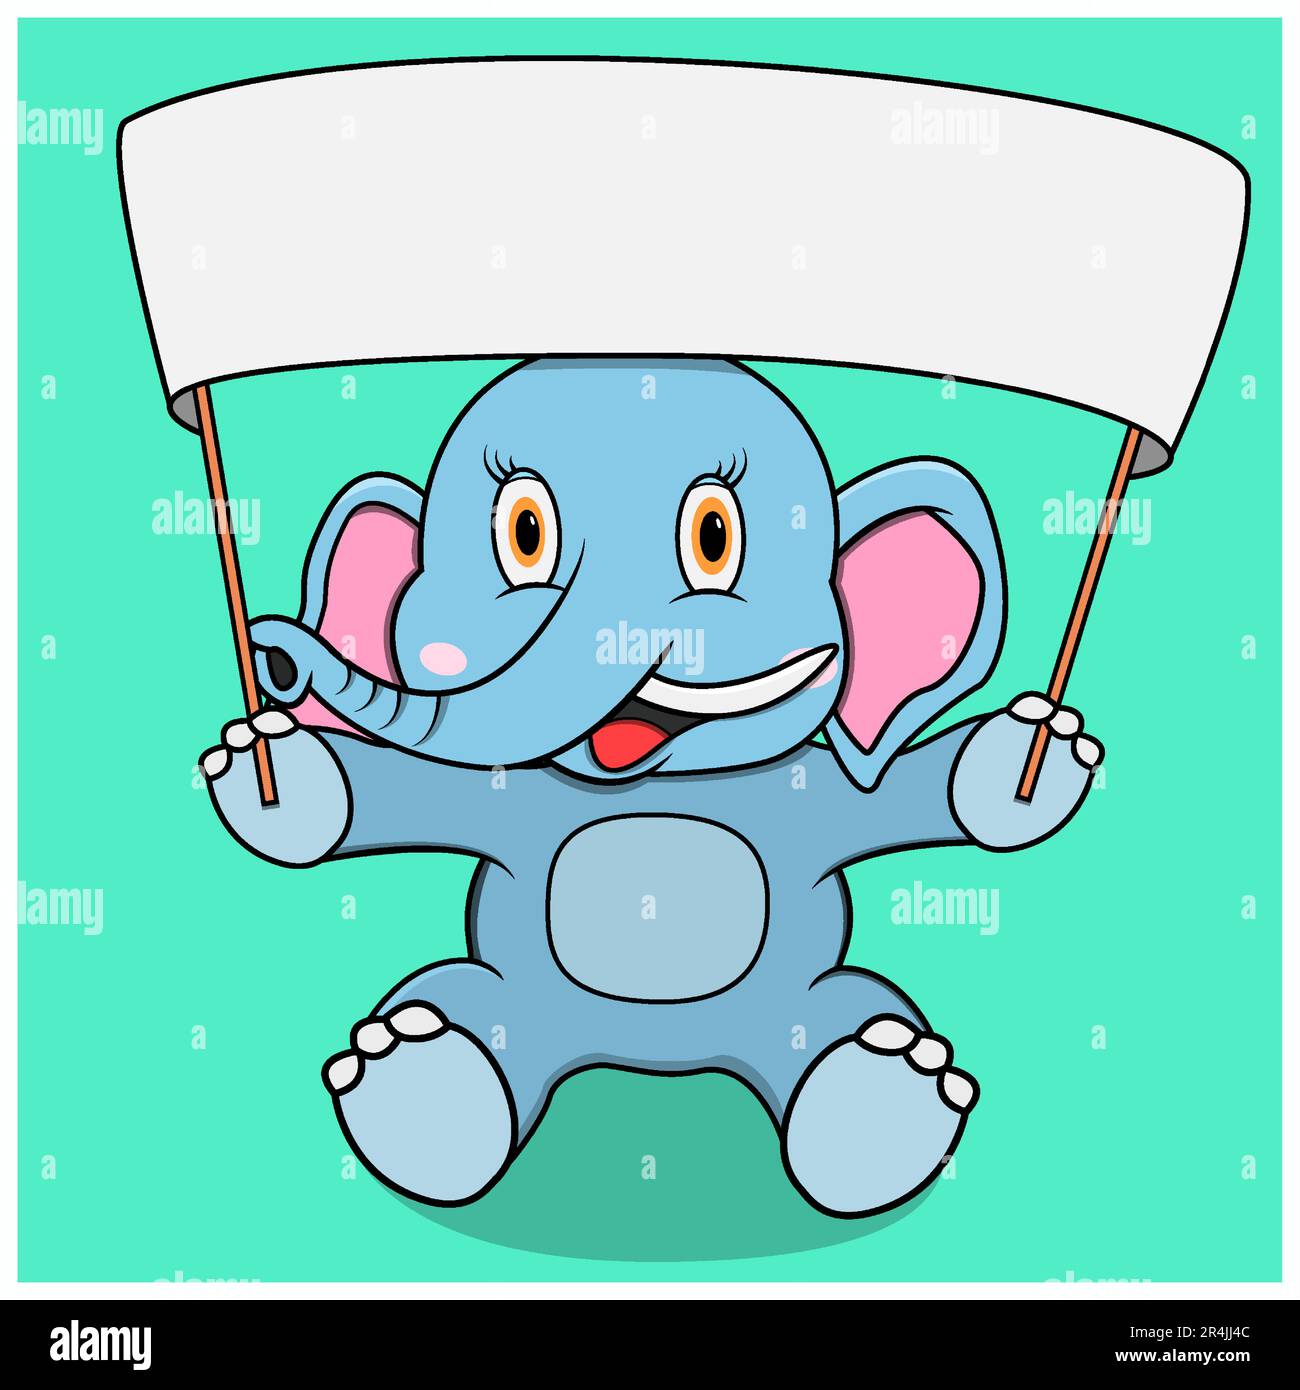 Éléphant de personnage avec grande bannière blanche vierge, fond bleu turquoise, mascotte, icône, personnage ou logo, vecteur et illustration. Illustration de Vecteur